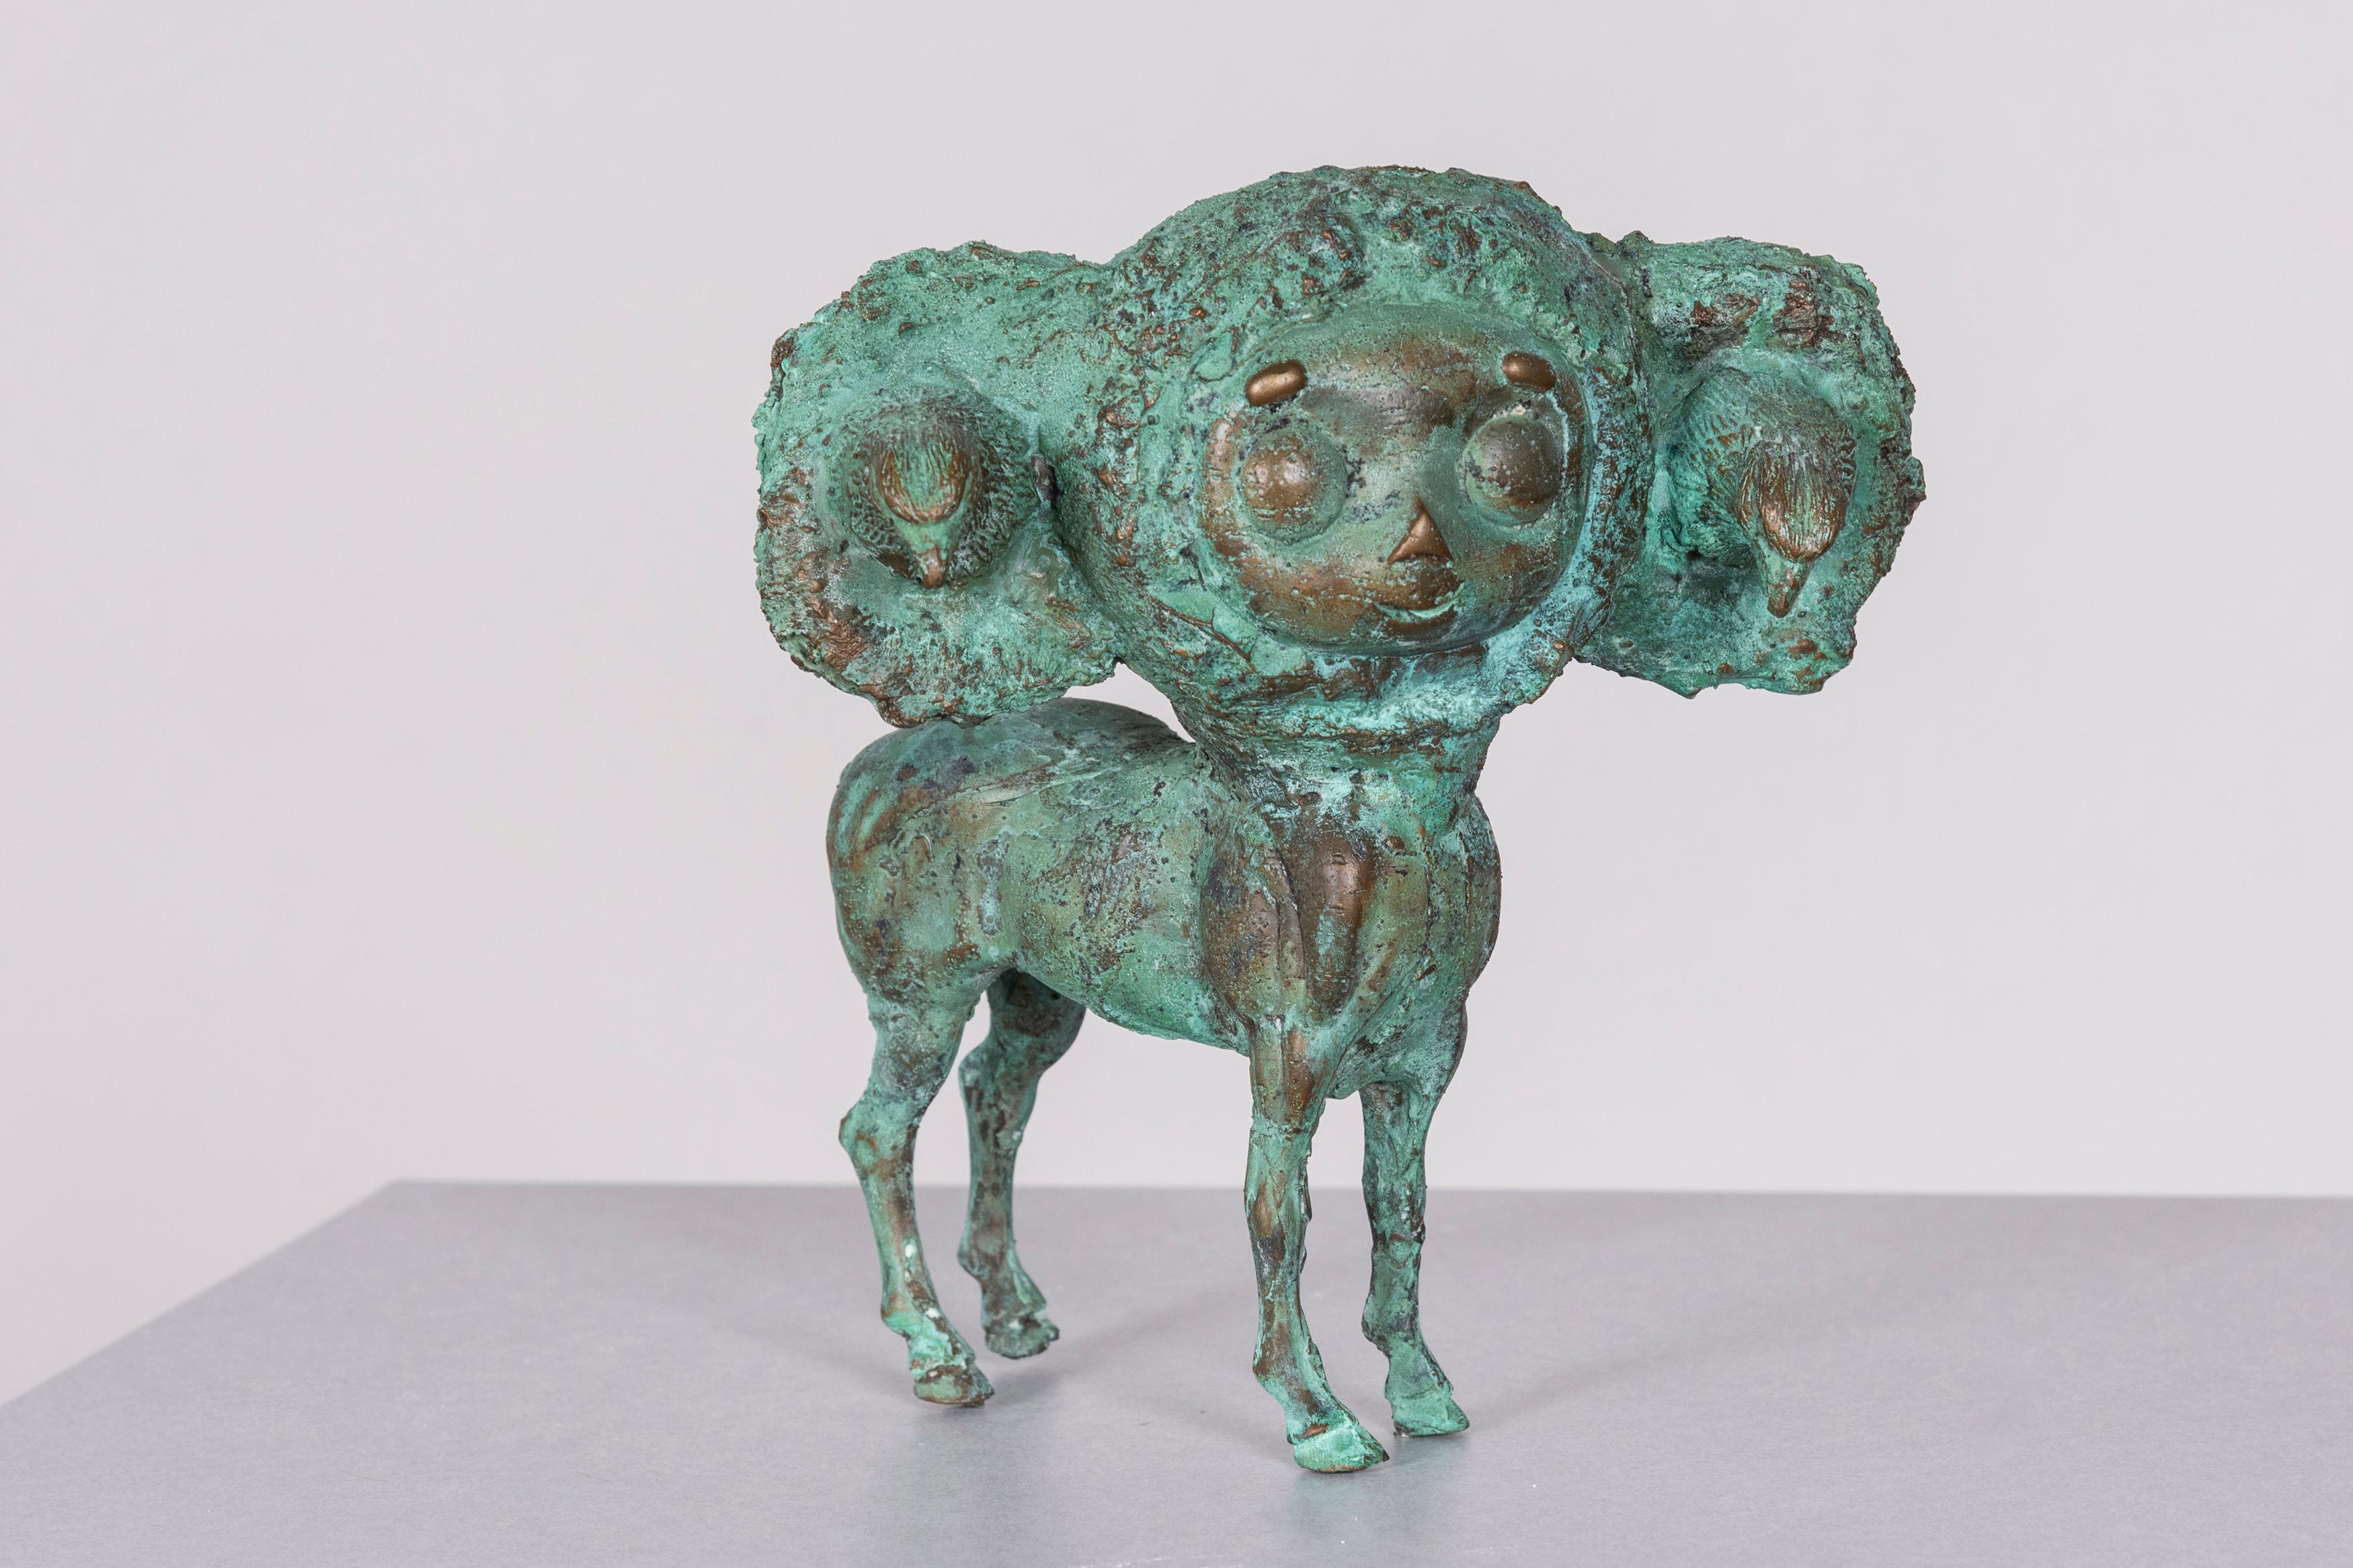 Joshua Goode Figurative Sculpture - Pop Culture, Bronze Sculpture: 'The Chupacabra'